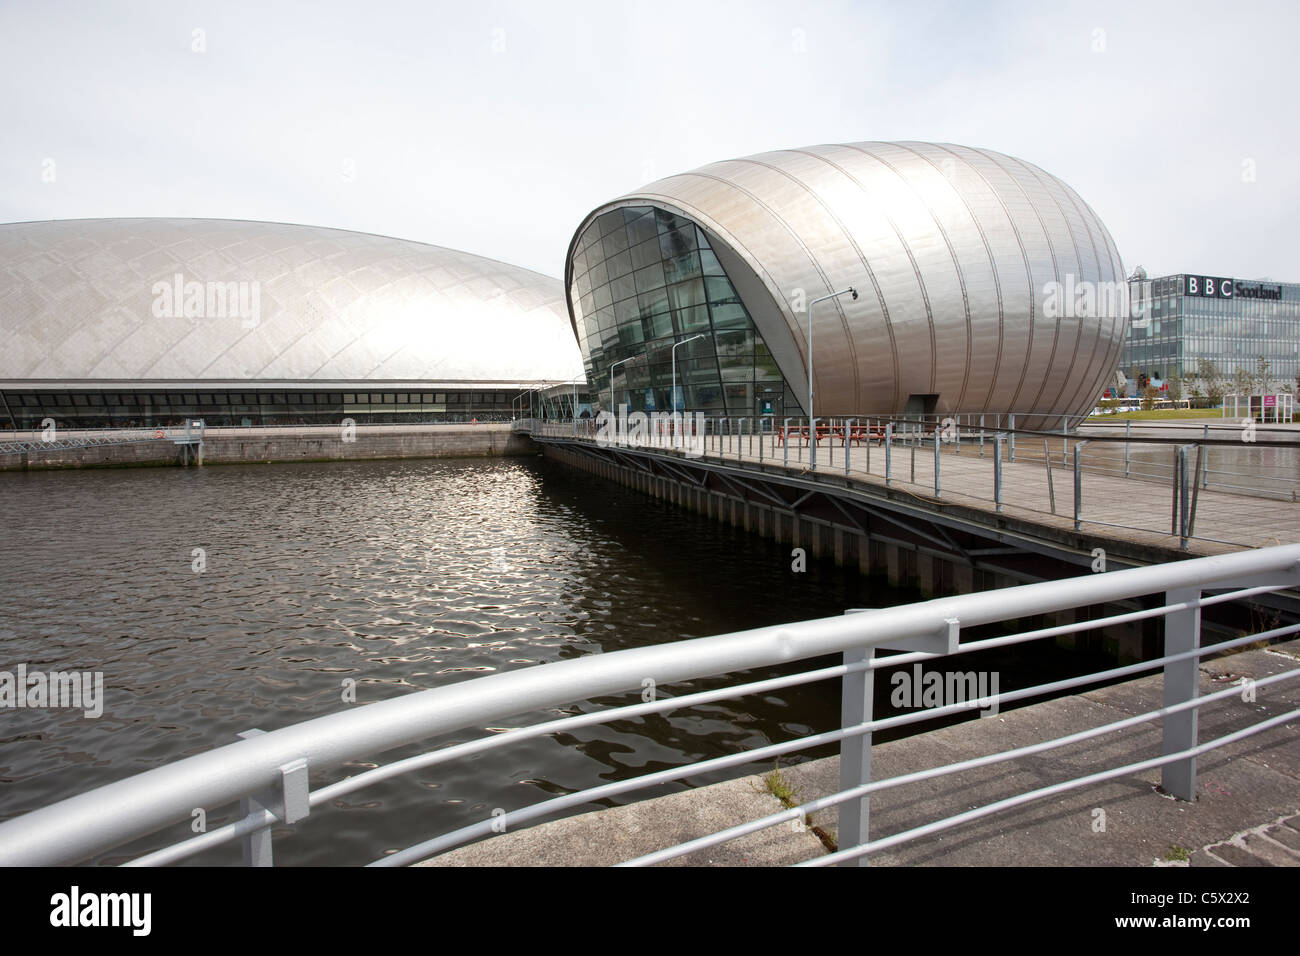 Il Glasgow Science Centre attrazione turistica situata sulla sponda meridionale del fiume Clyde a Glasgow, Scozia.Foto:Jeff Gilbert Foto Stock